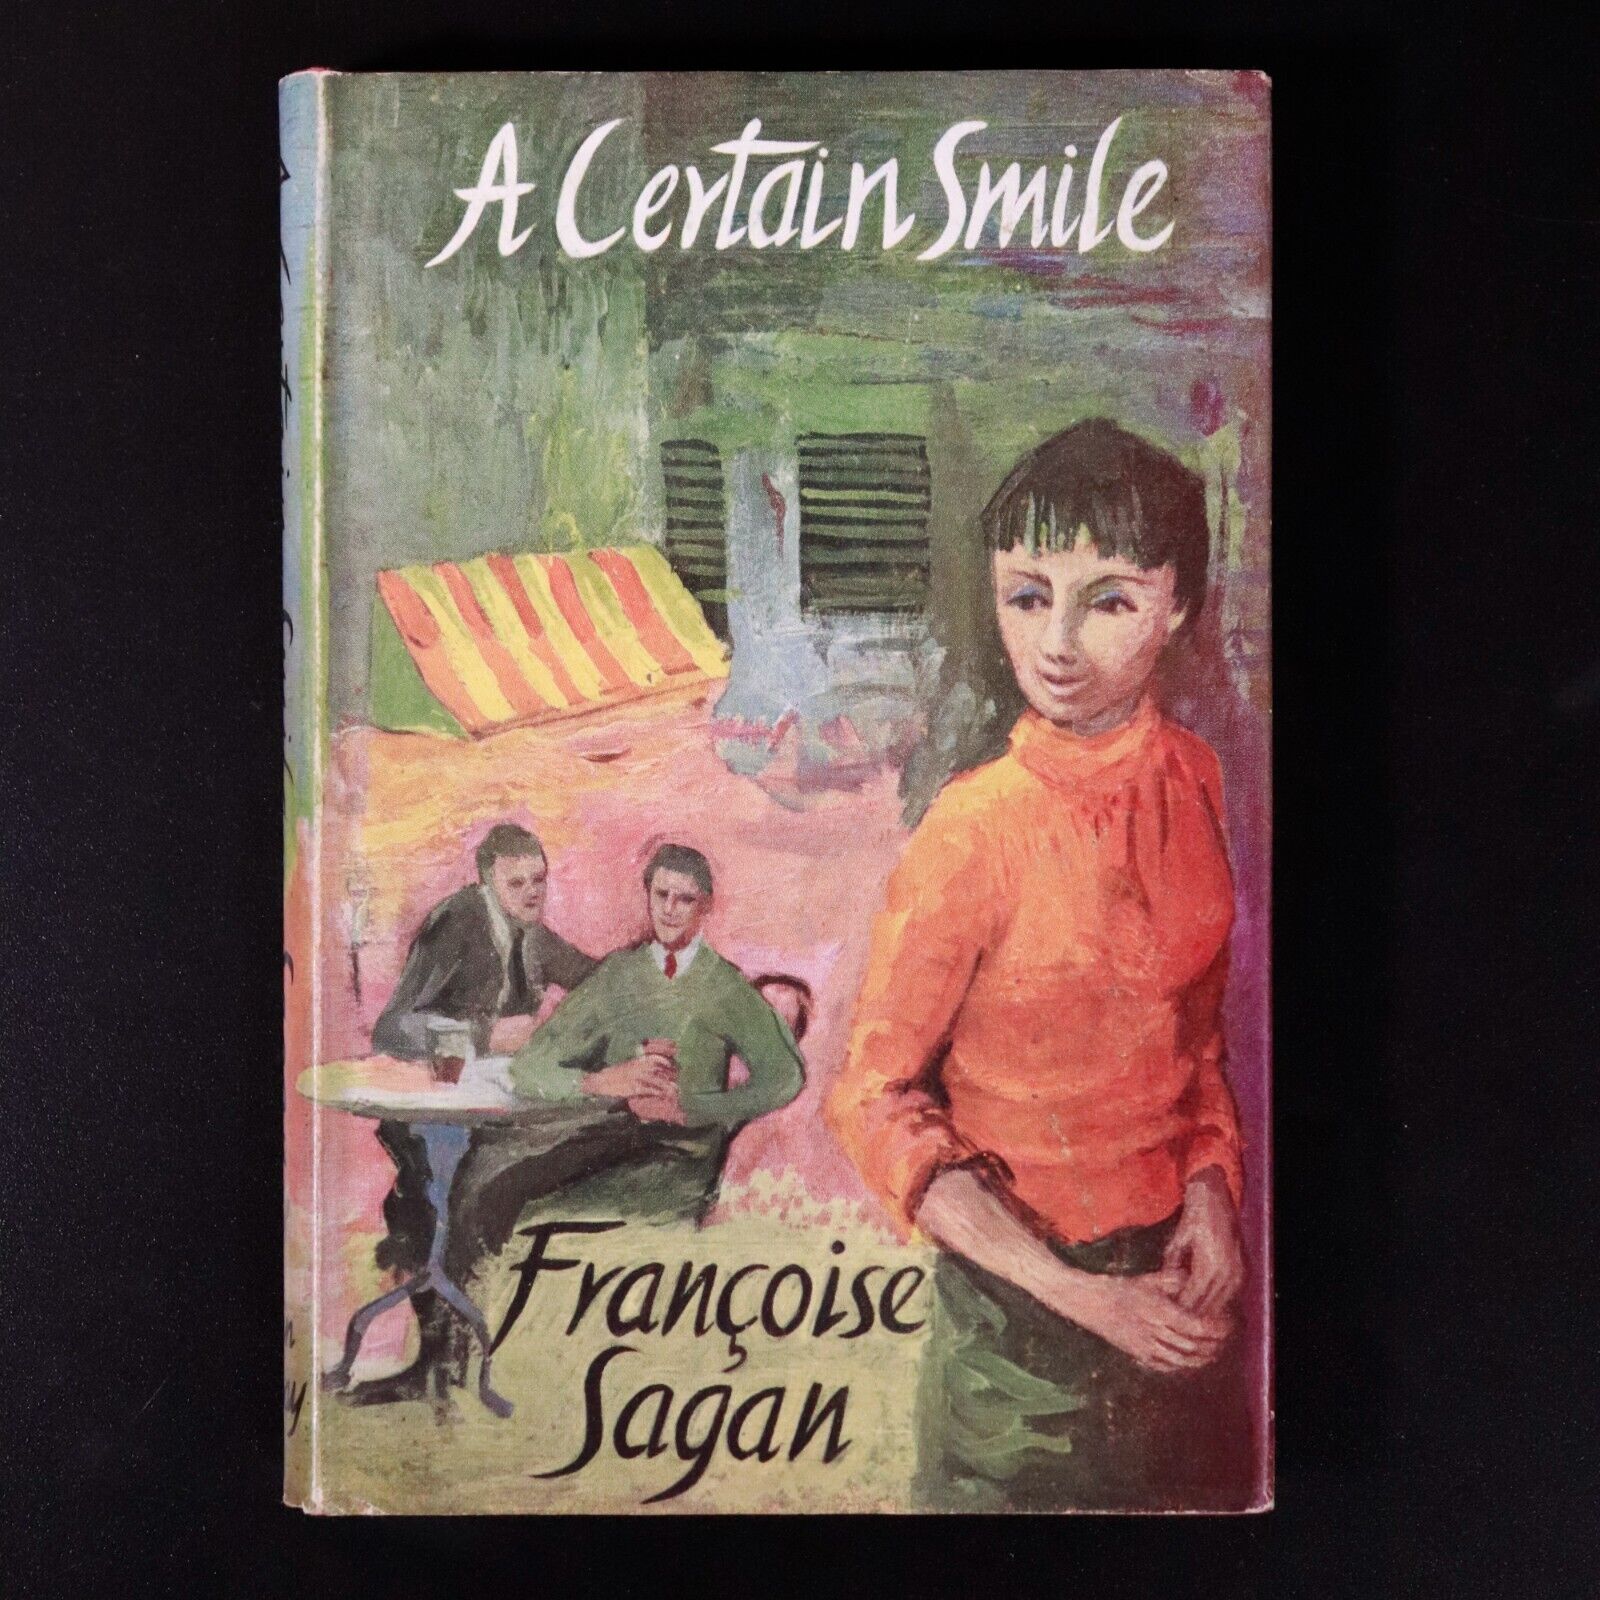 1956 A Certain Smile by Francois Sagan 1st Edition Vintage Fiction Book